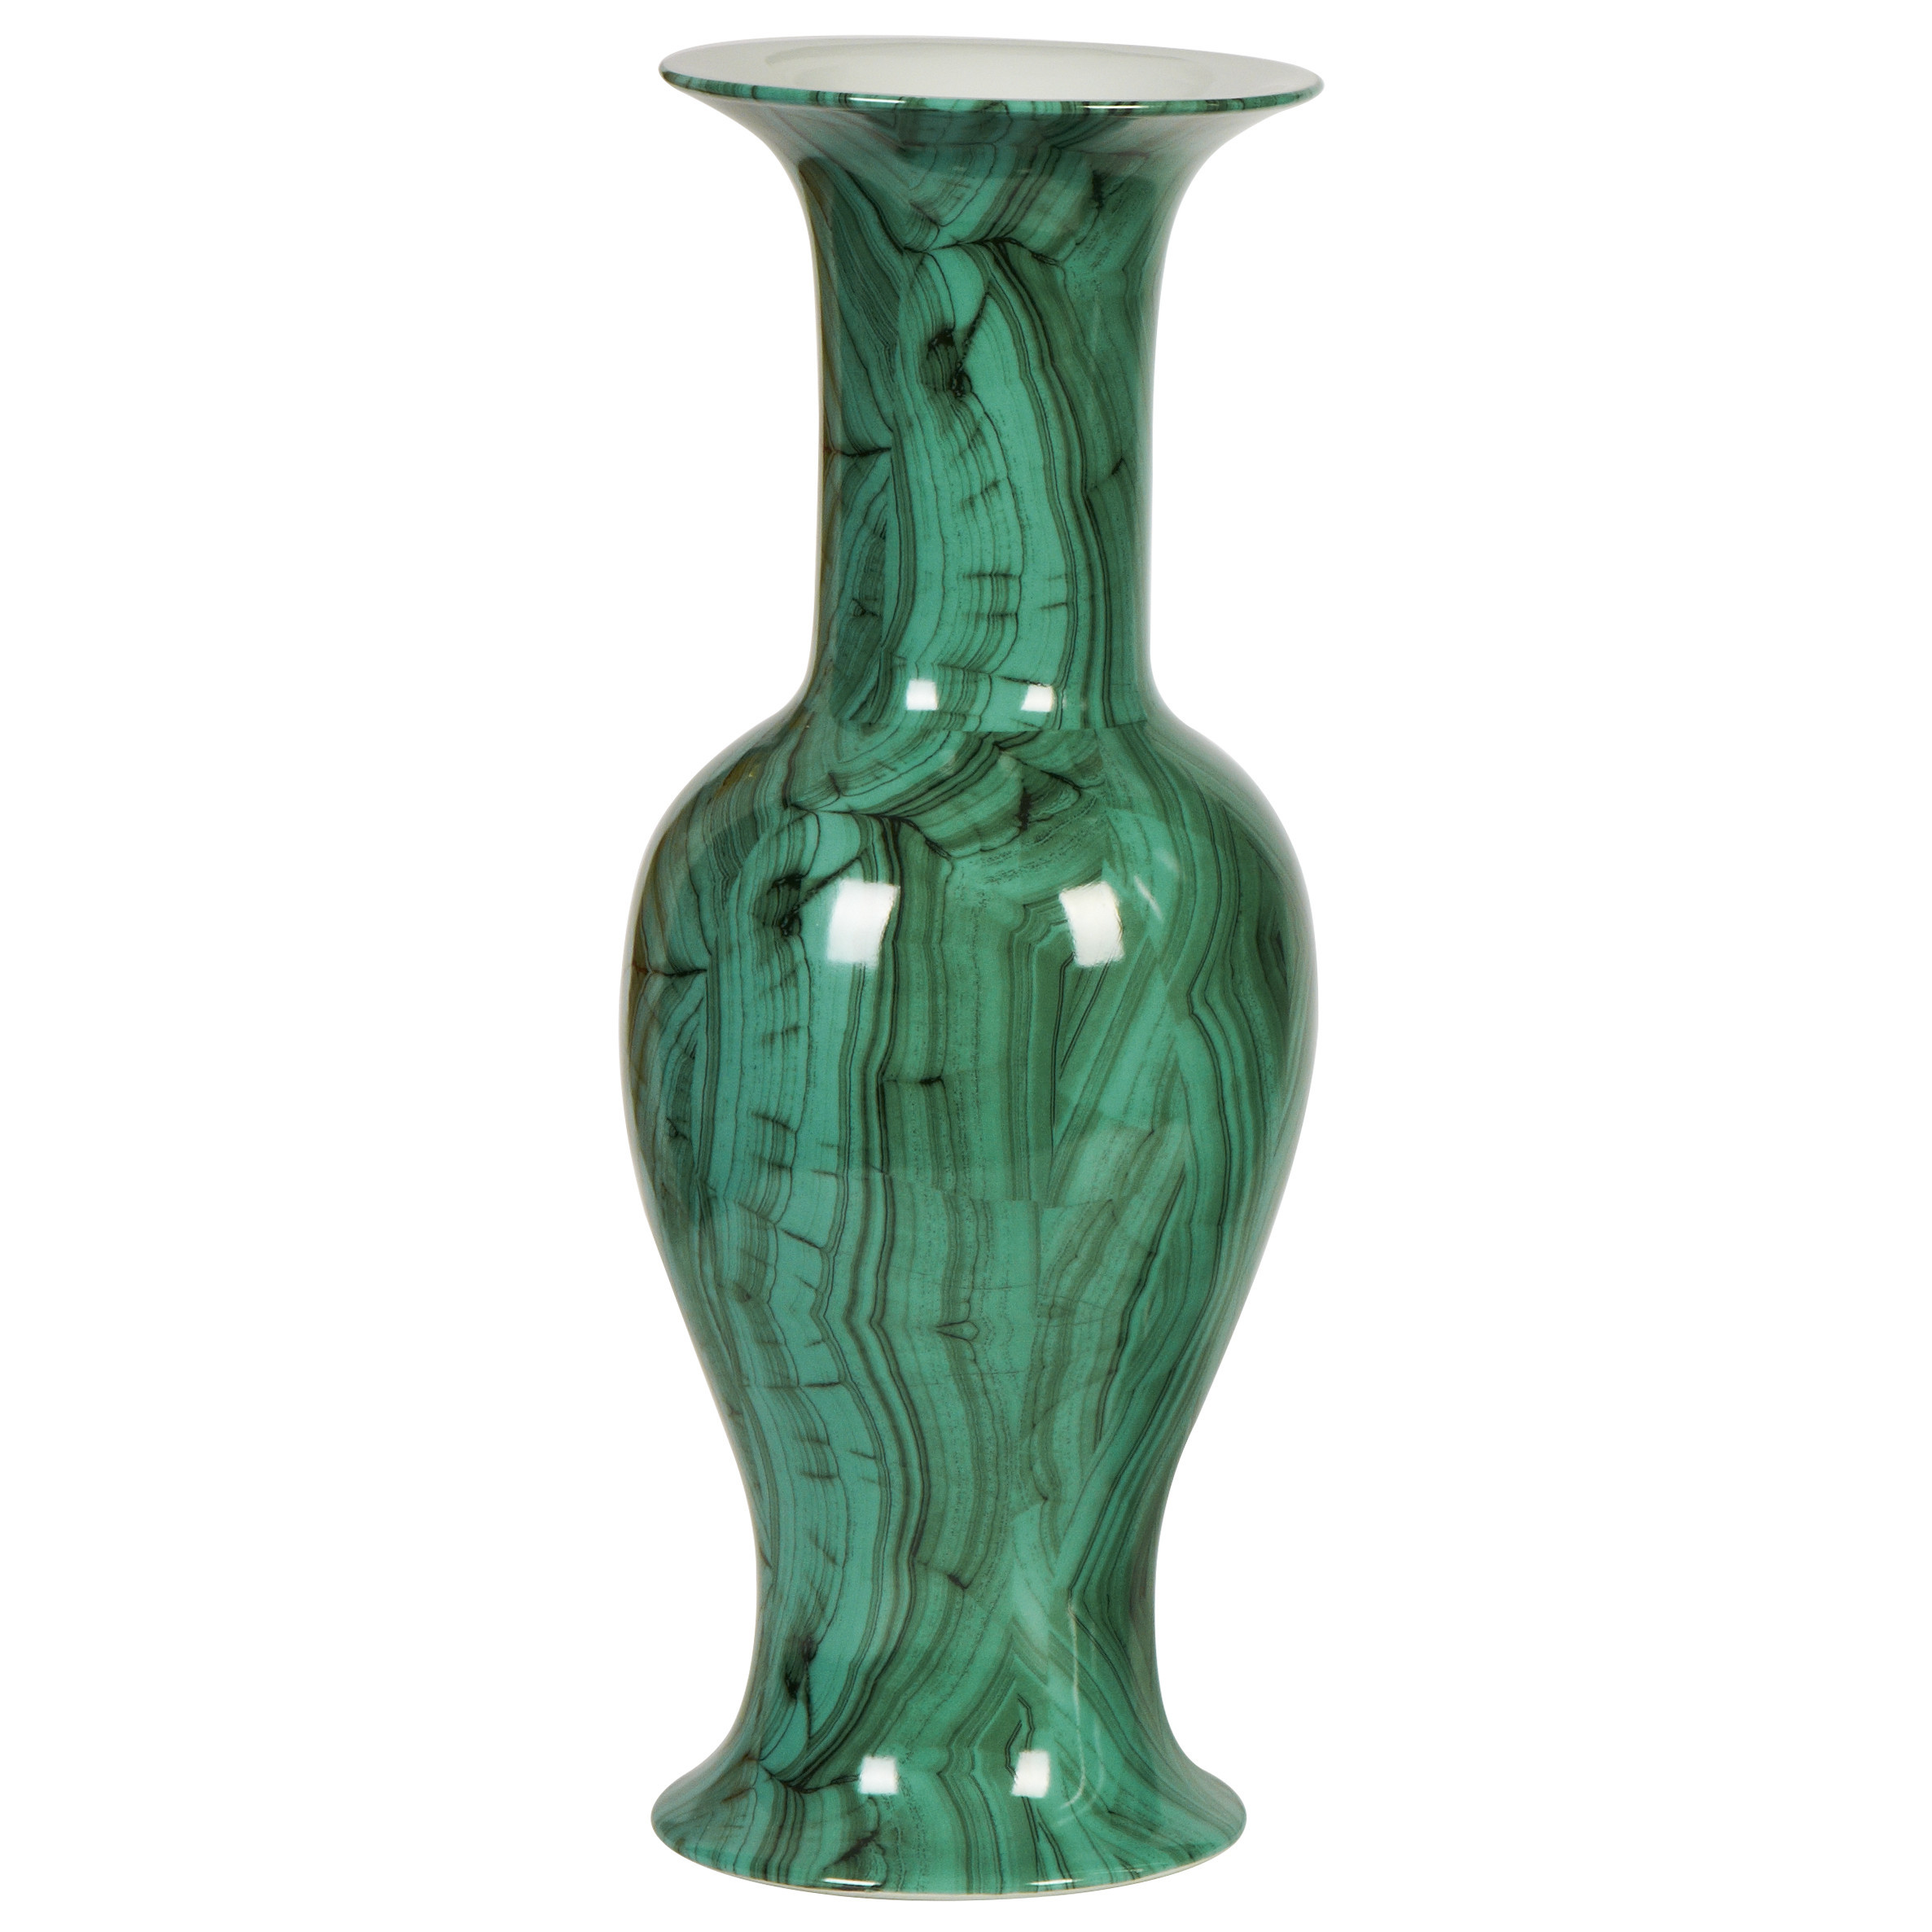 16 Famous Green Glass Bottle Vase 2022 free download green glass bottle vase of forest green baluster porcelain vase vases inside forest green baluster porcelain vase at belleandjune com vases